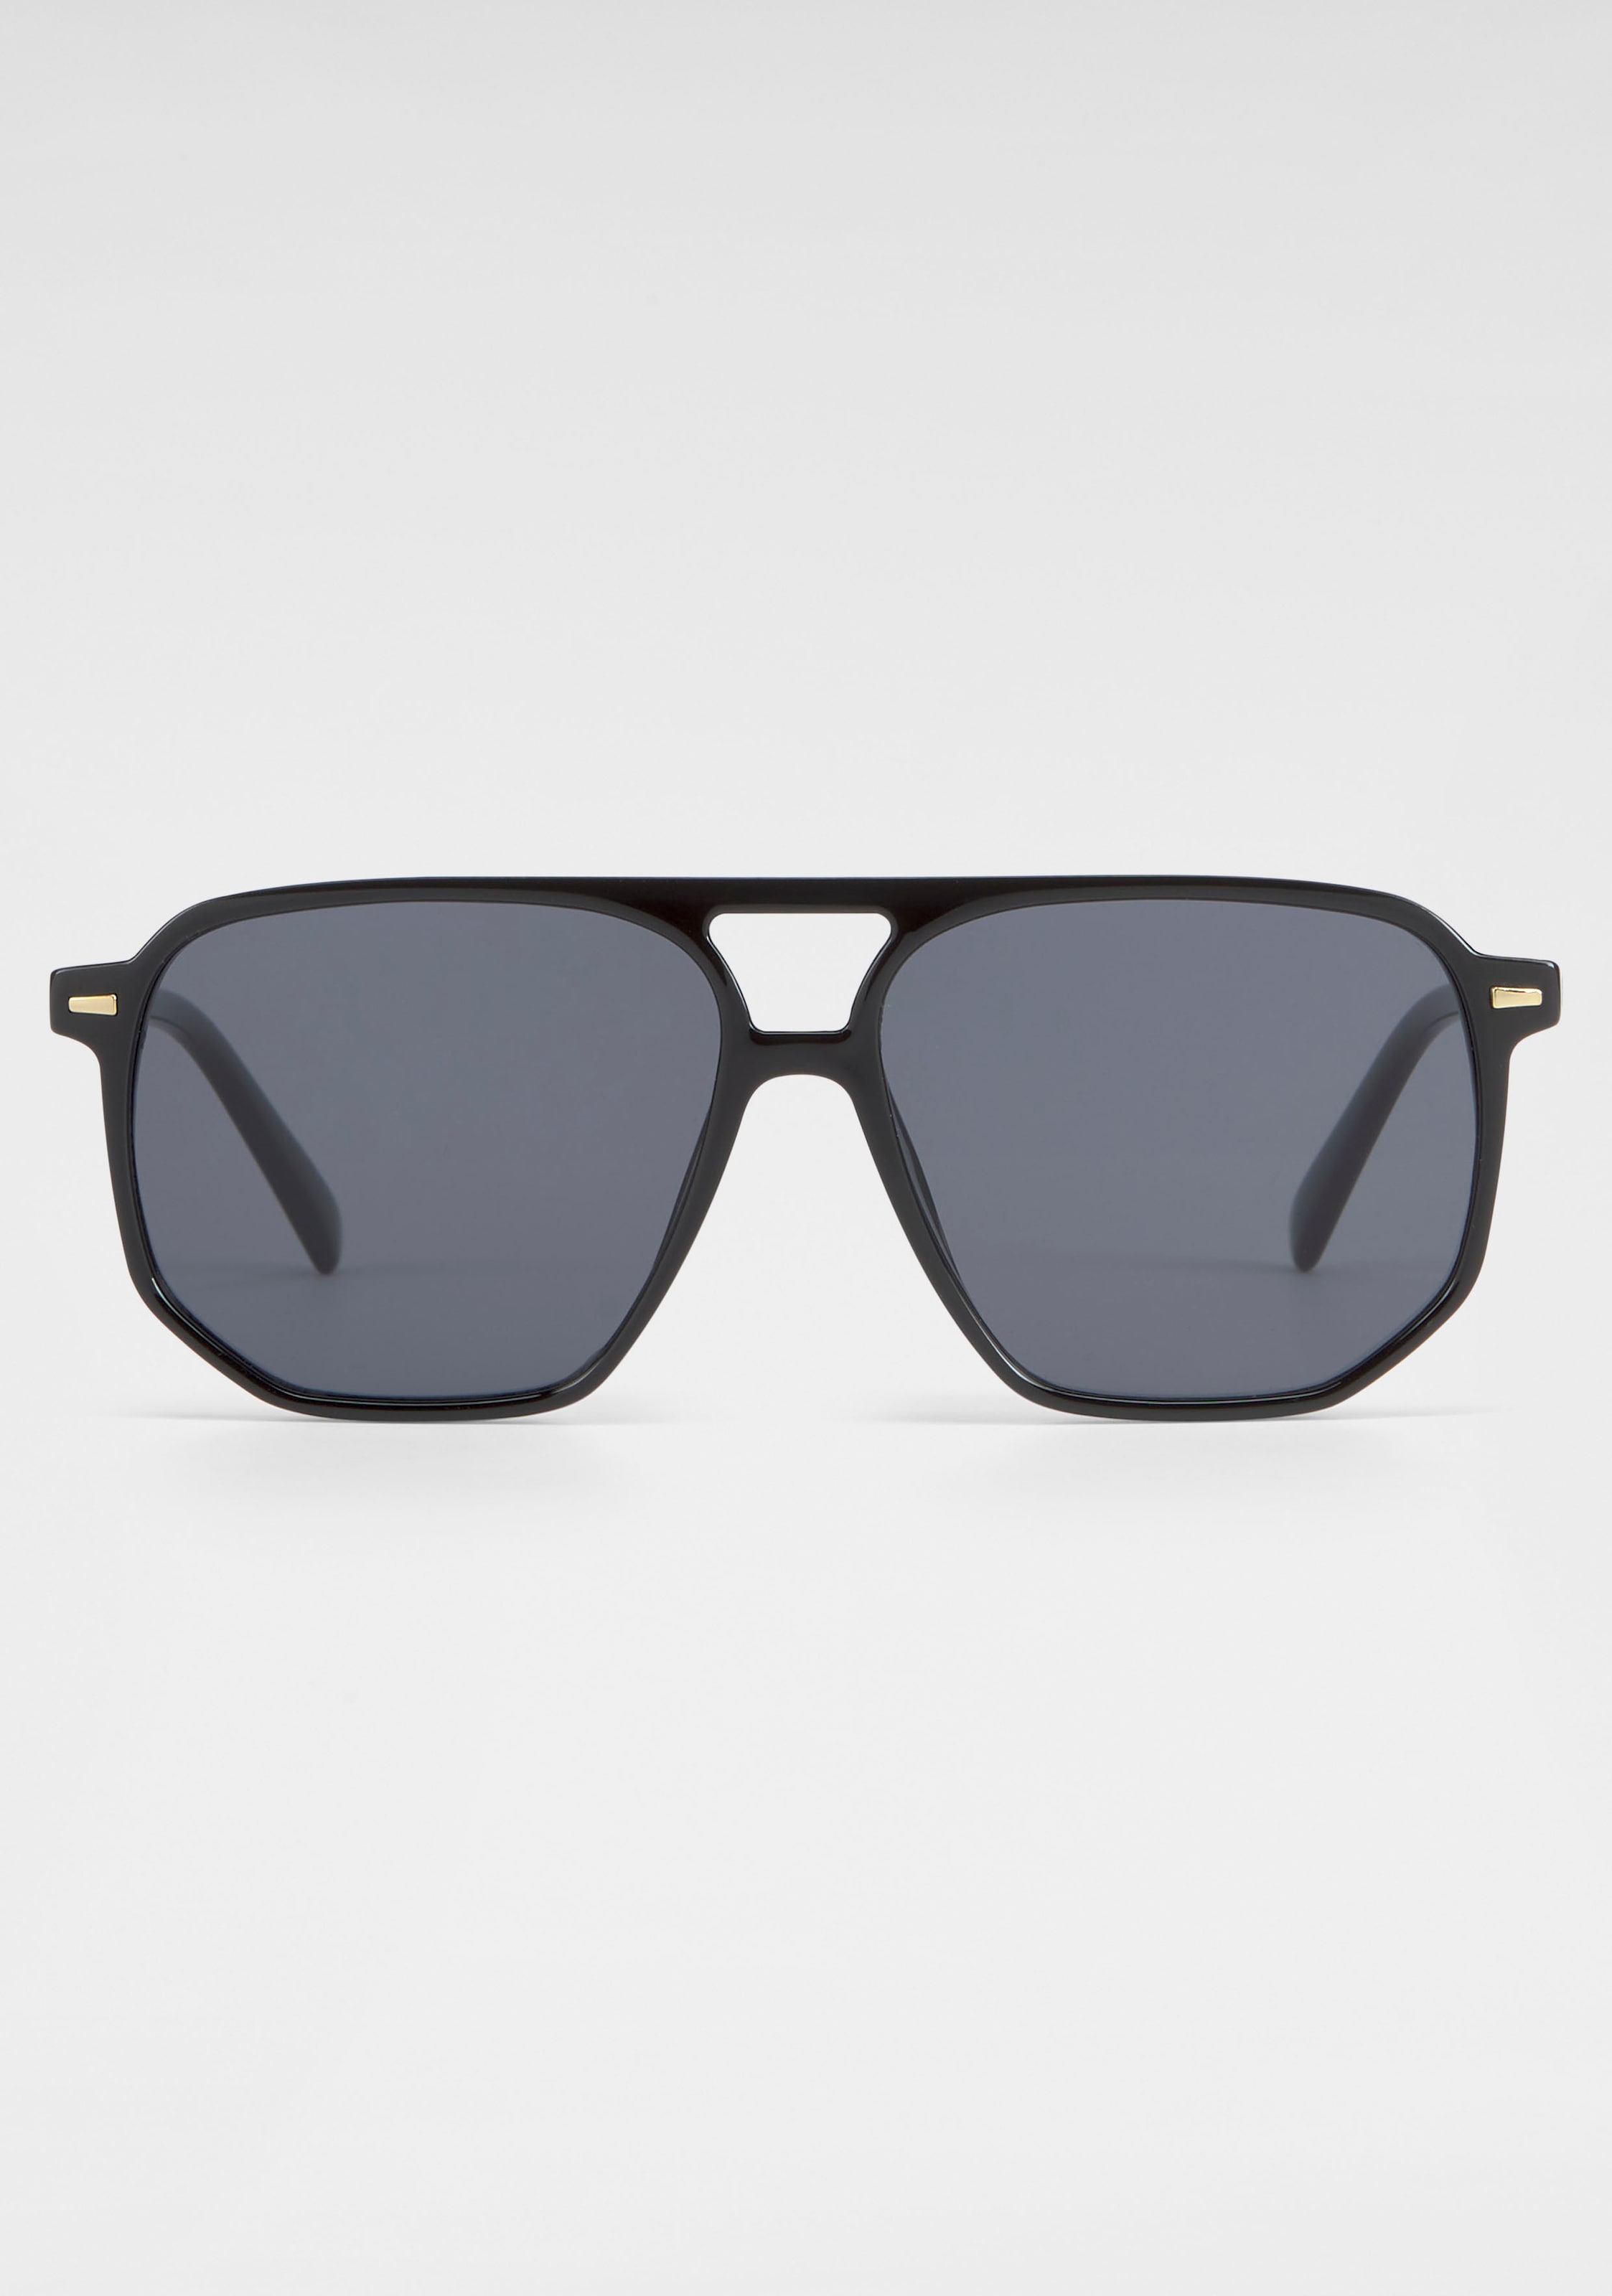 YOUNG SPIRIT LONDON OTTO online Vollrand-Sonnenbrille bestellen bei Trendige Sonnenbrille, Eyewear